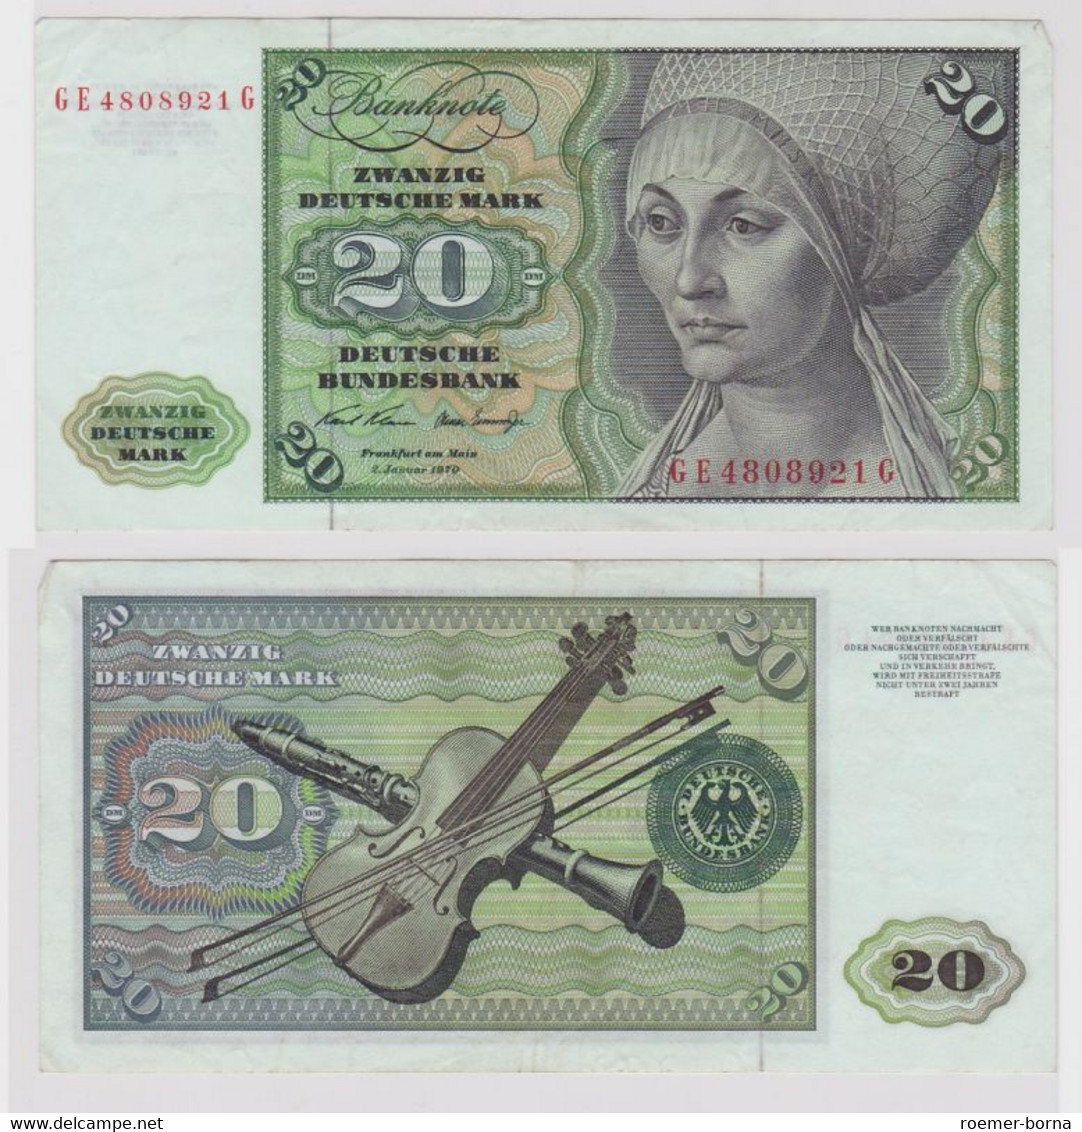 T148568 Banknote 20 DM Deutsche Mark Ro. 271b Schein 2.Jan. 1970 KN GE 4808921 G - 20 Deutsche Mark